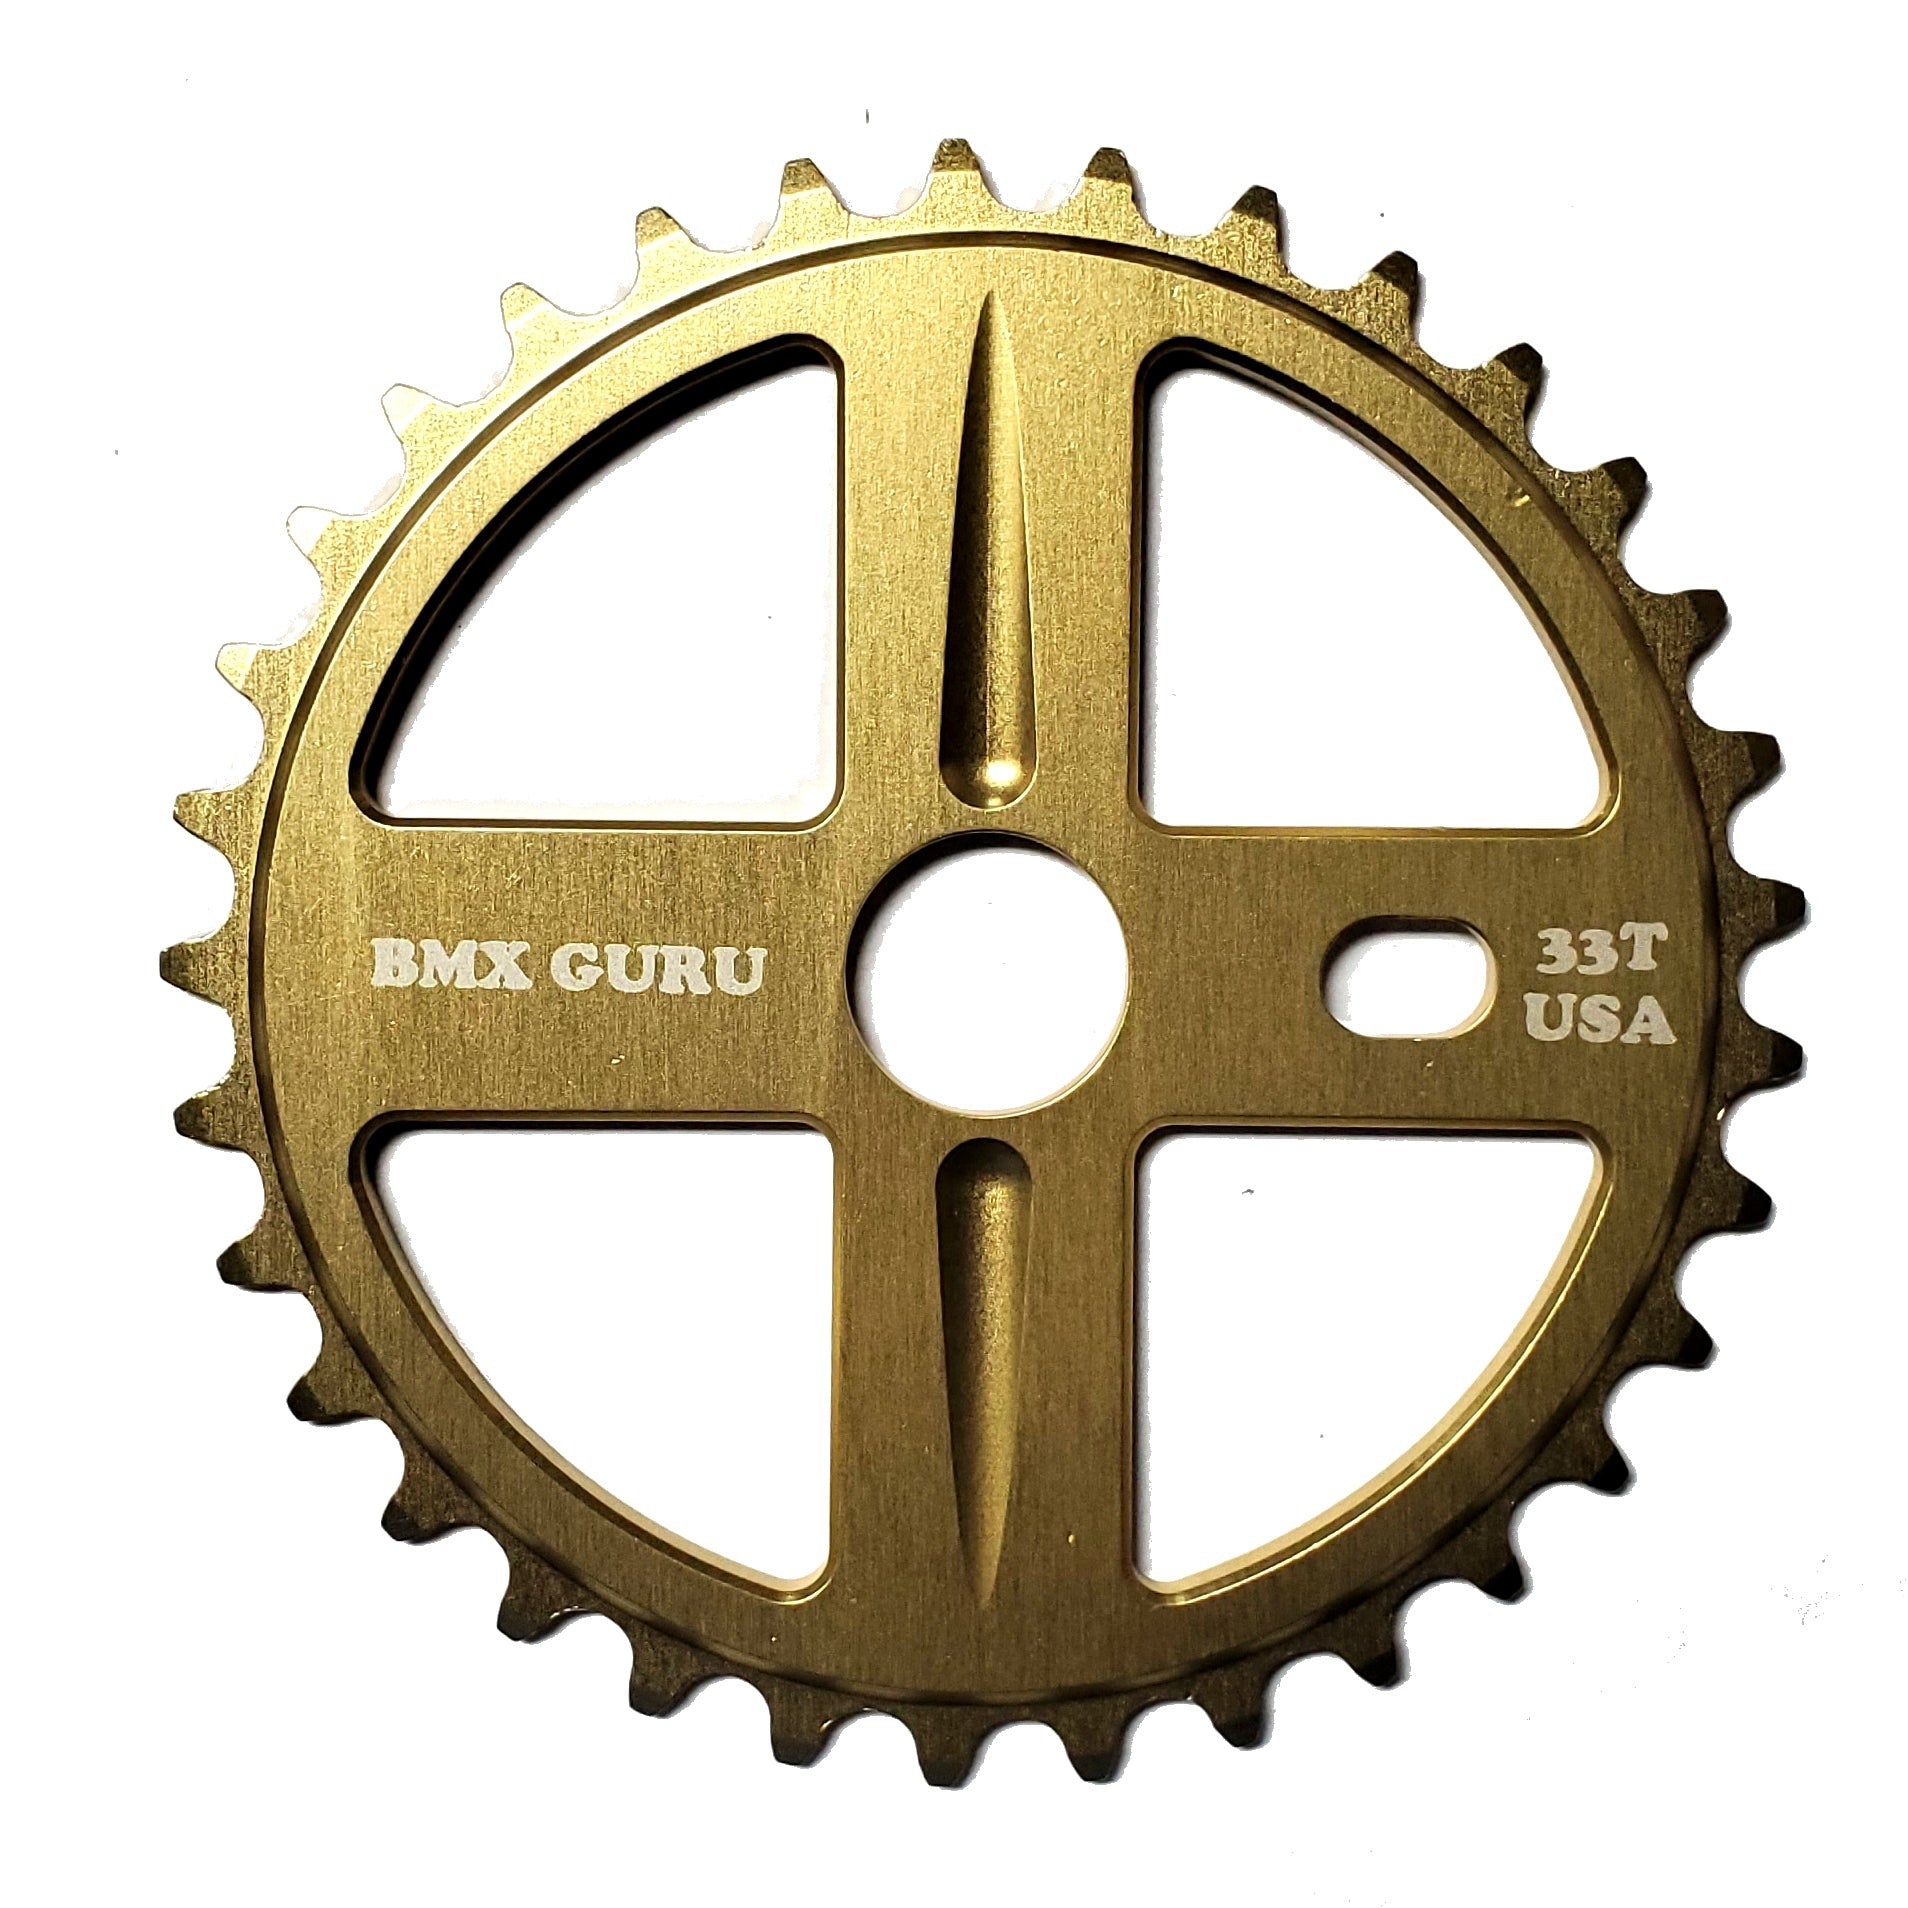 BMXGuru 33t Bolt Drive BMX Aluminum Sprocket / Chainwheel - Gold - USA Made